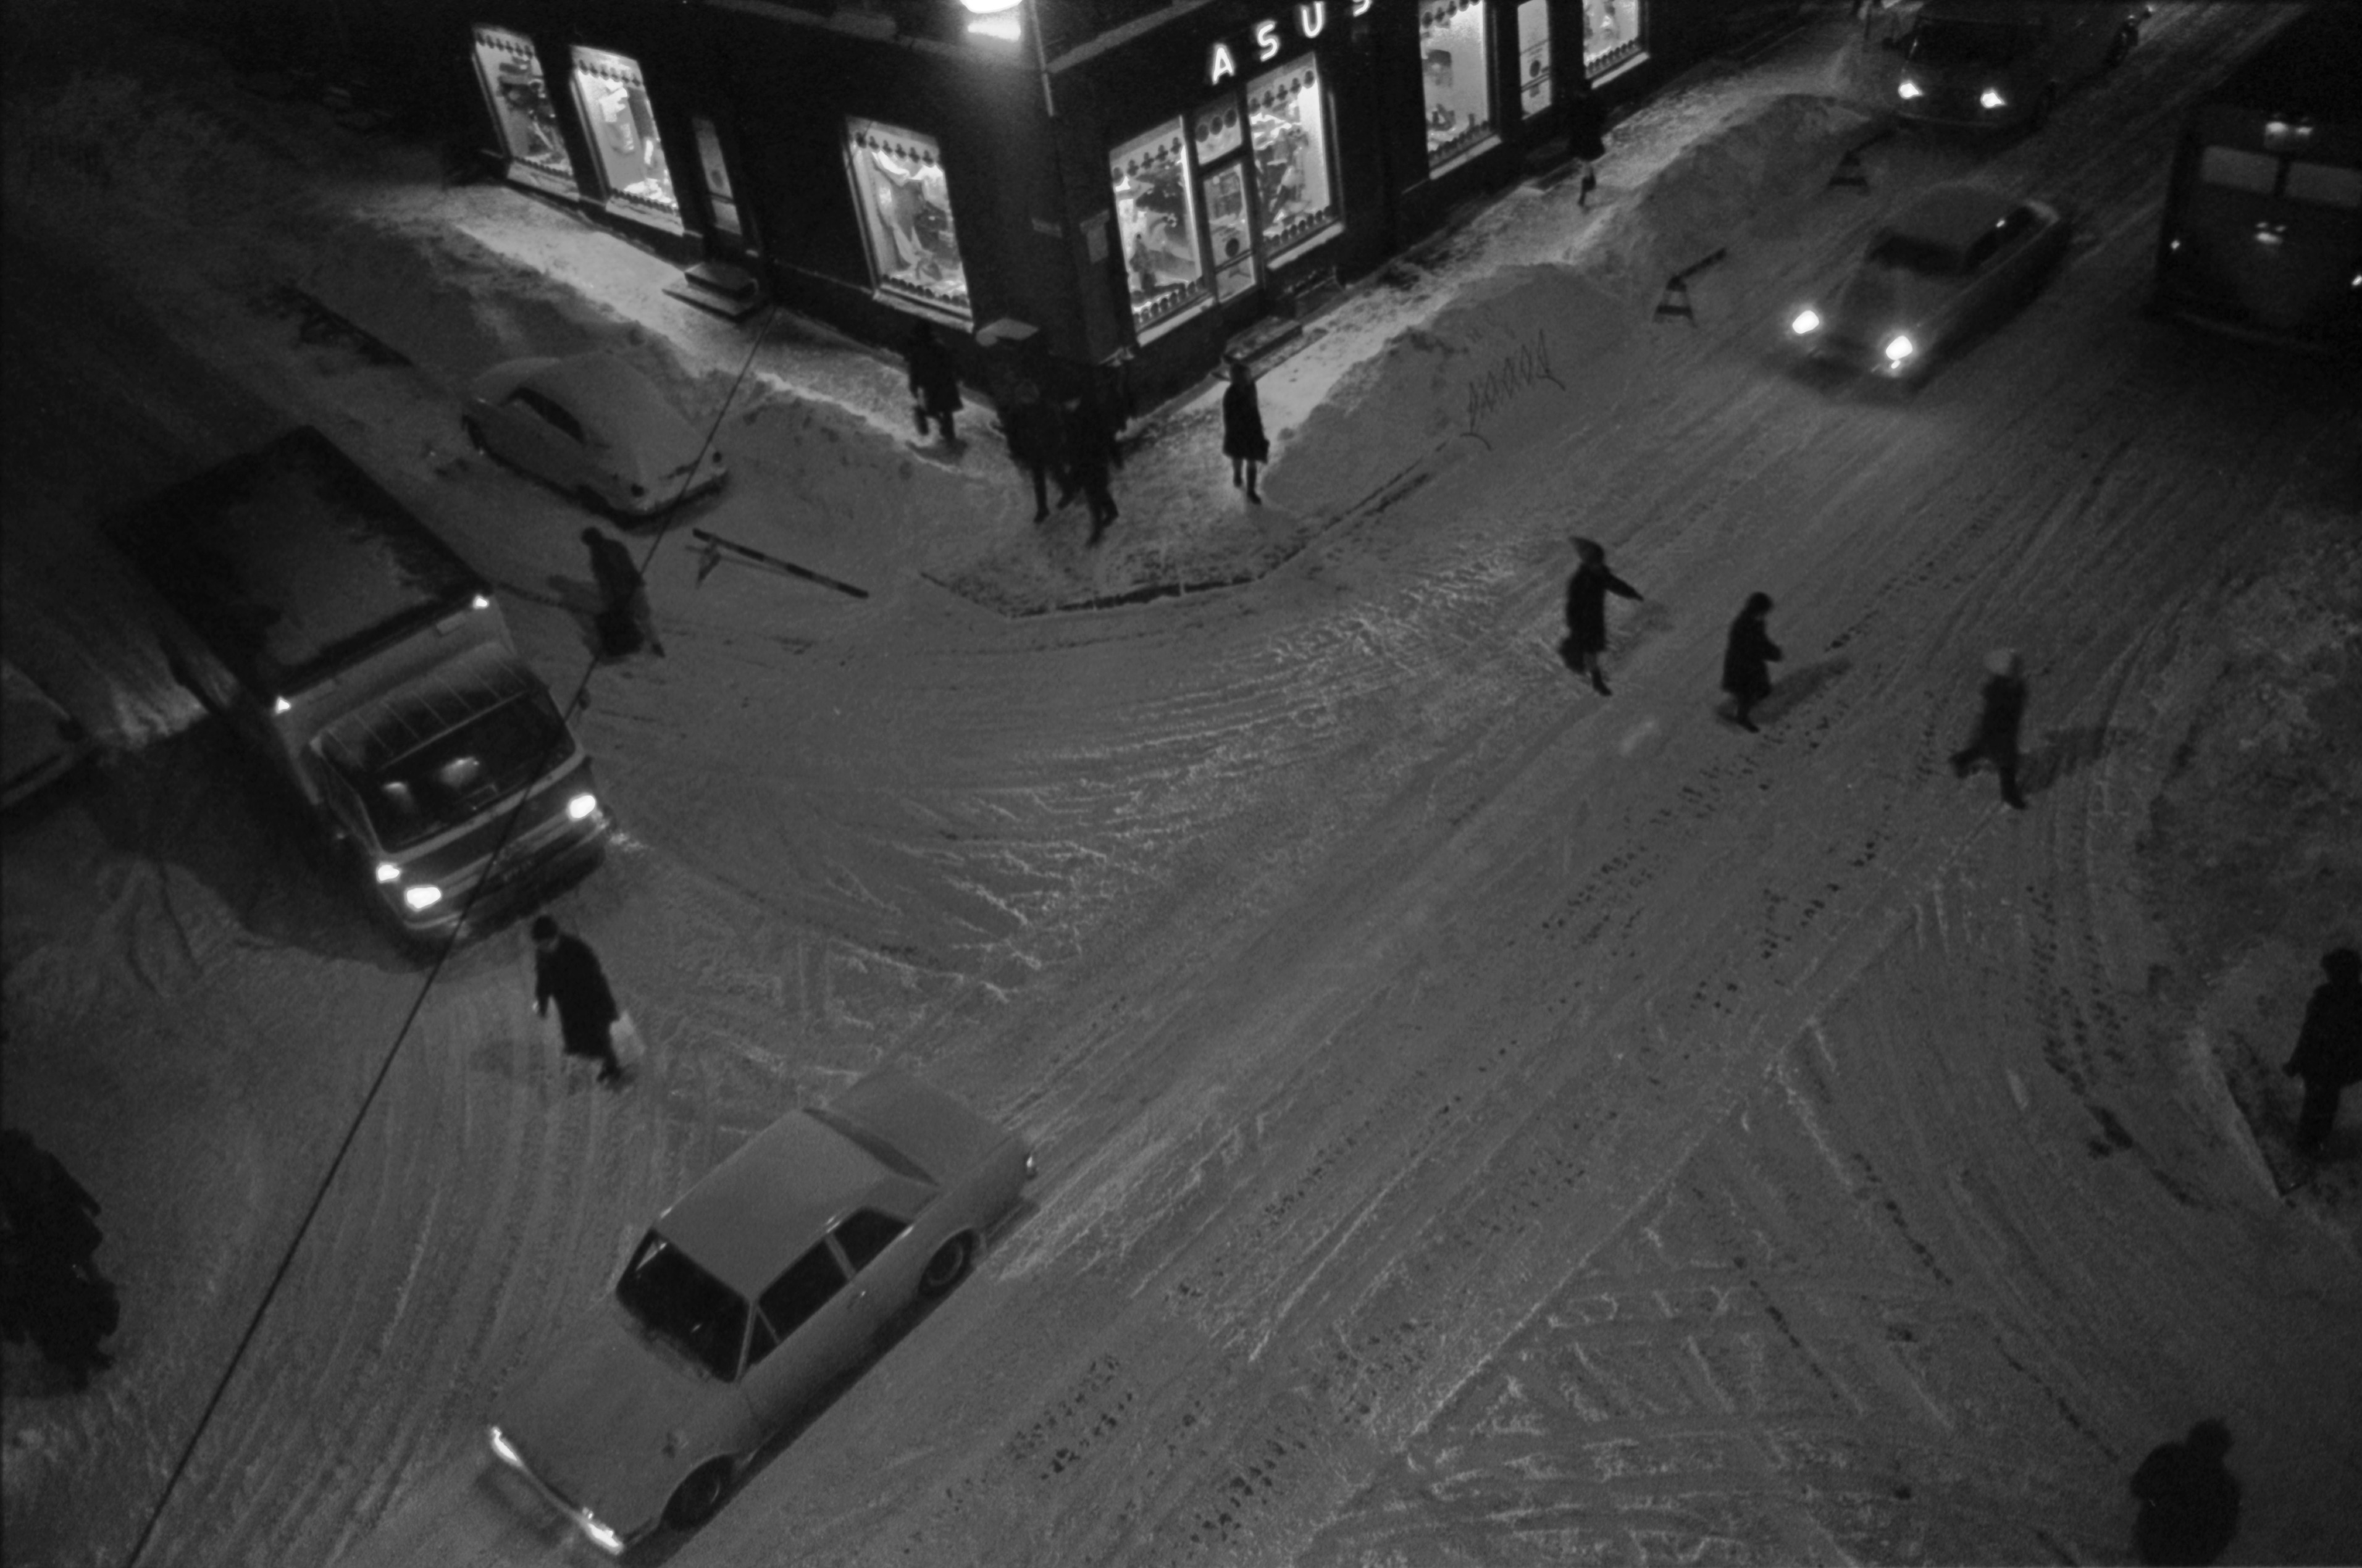 Liisankatu 6. Meritullinkatu 24. Jalankulkijoita ja autoja talvi-iltana lumisen Liisankadun ja Meritullinkadun risteyksessä. Kuvattu Liisankatu 7:n neljännen kerroksen ikkunasta.